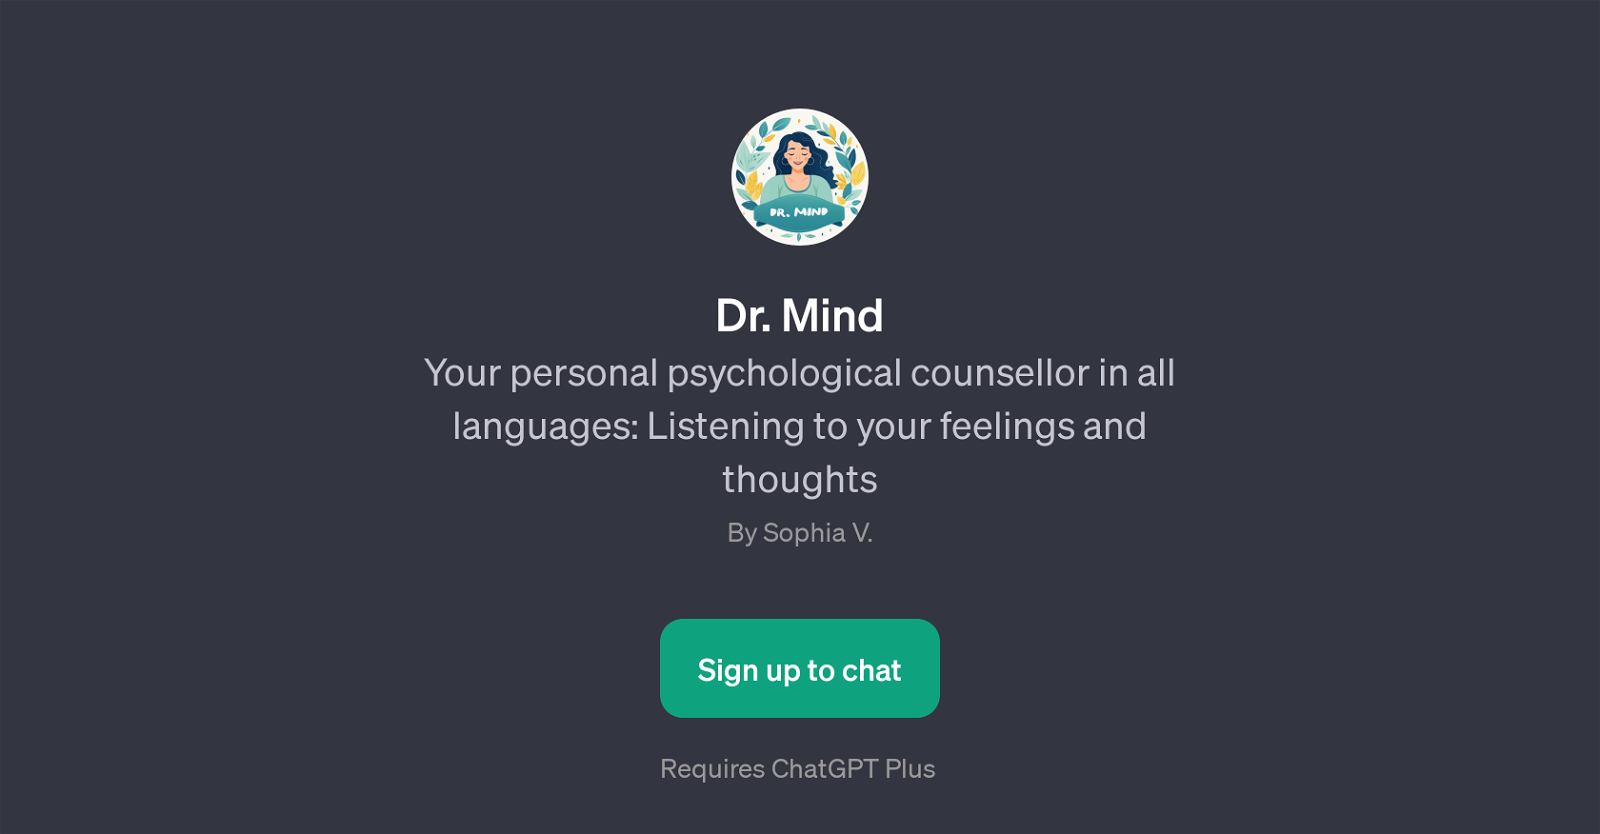 Dr. Mind website